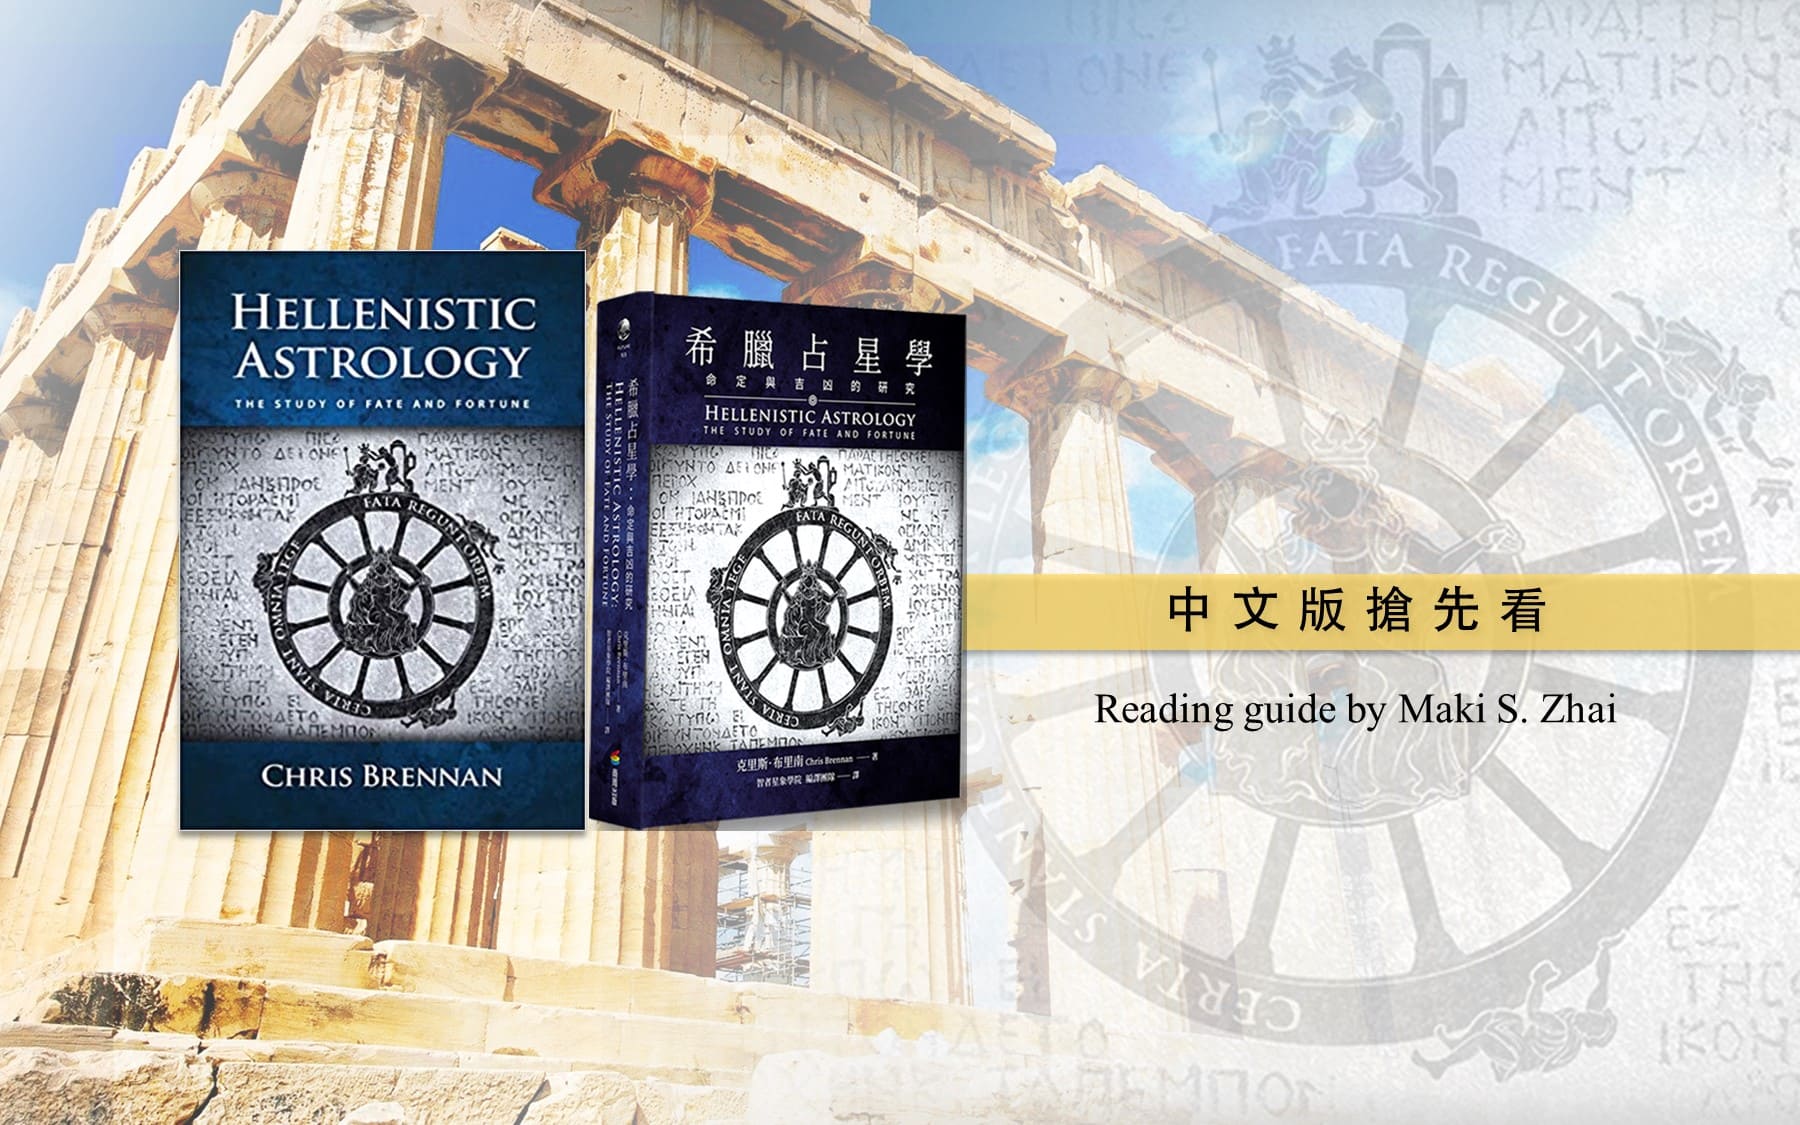 希臘占星學》閱讀指引by 瑪碁斯（Maki S. Zhai） ⋆ 智者星象學院